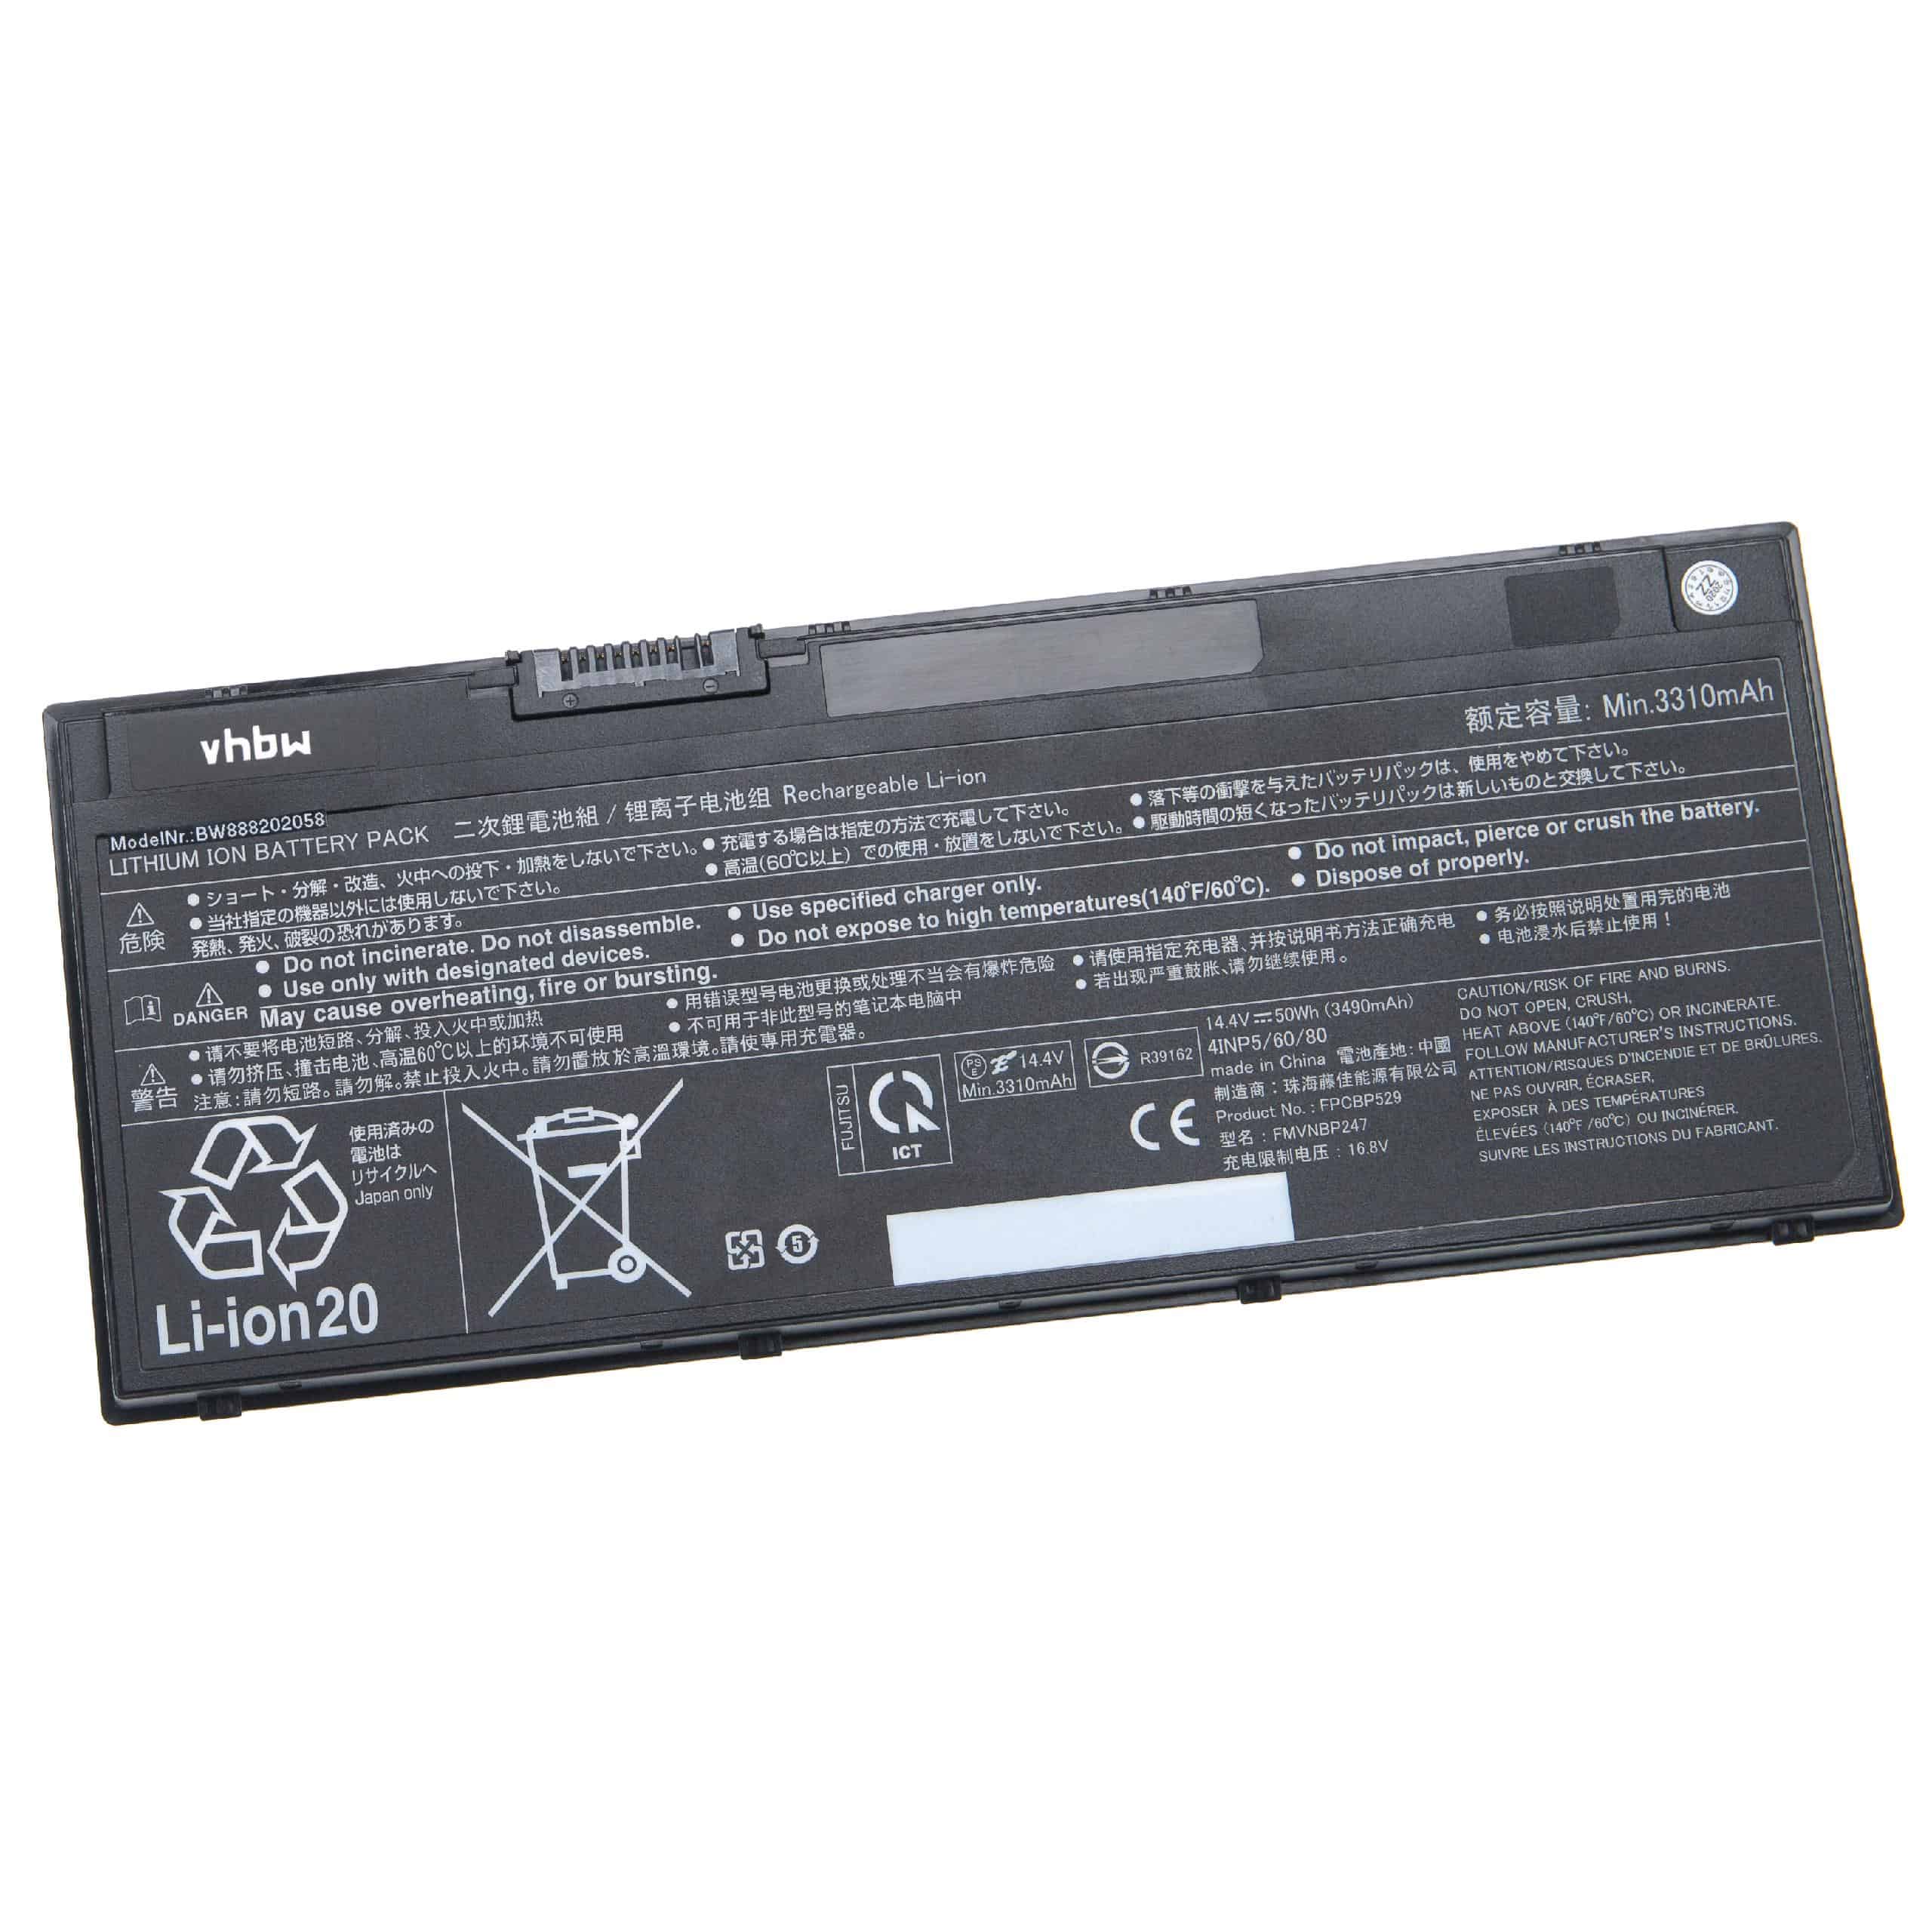 Akumulator do laptopa zamiennik Fujitsu 34053269, 34061271, 34068253 - 3490 mAh 14,4 V Li-Ion, czarny